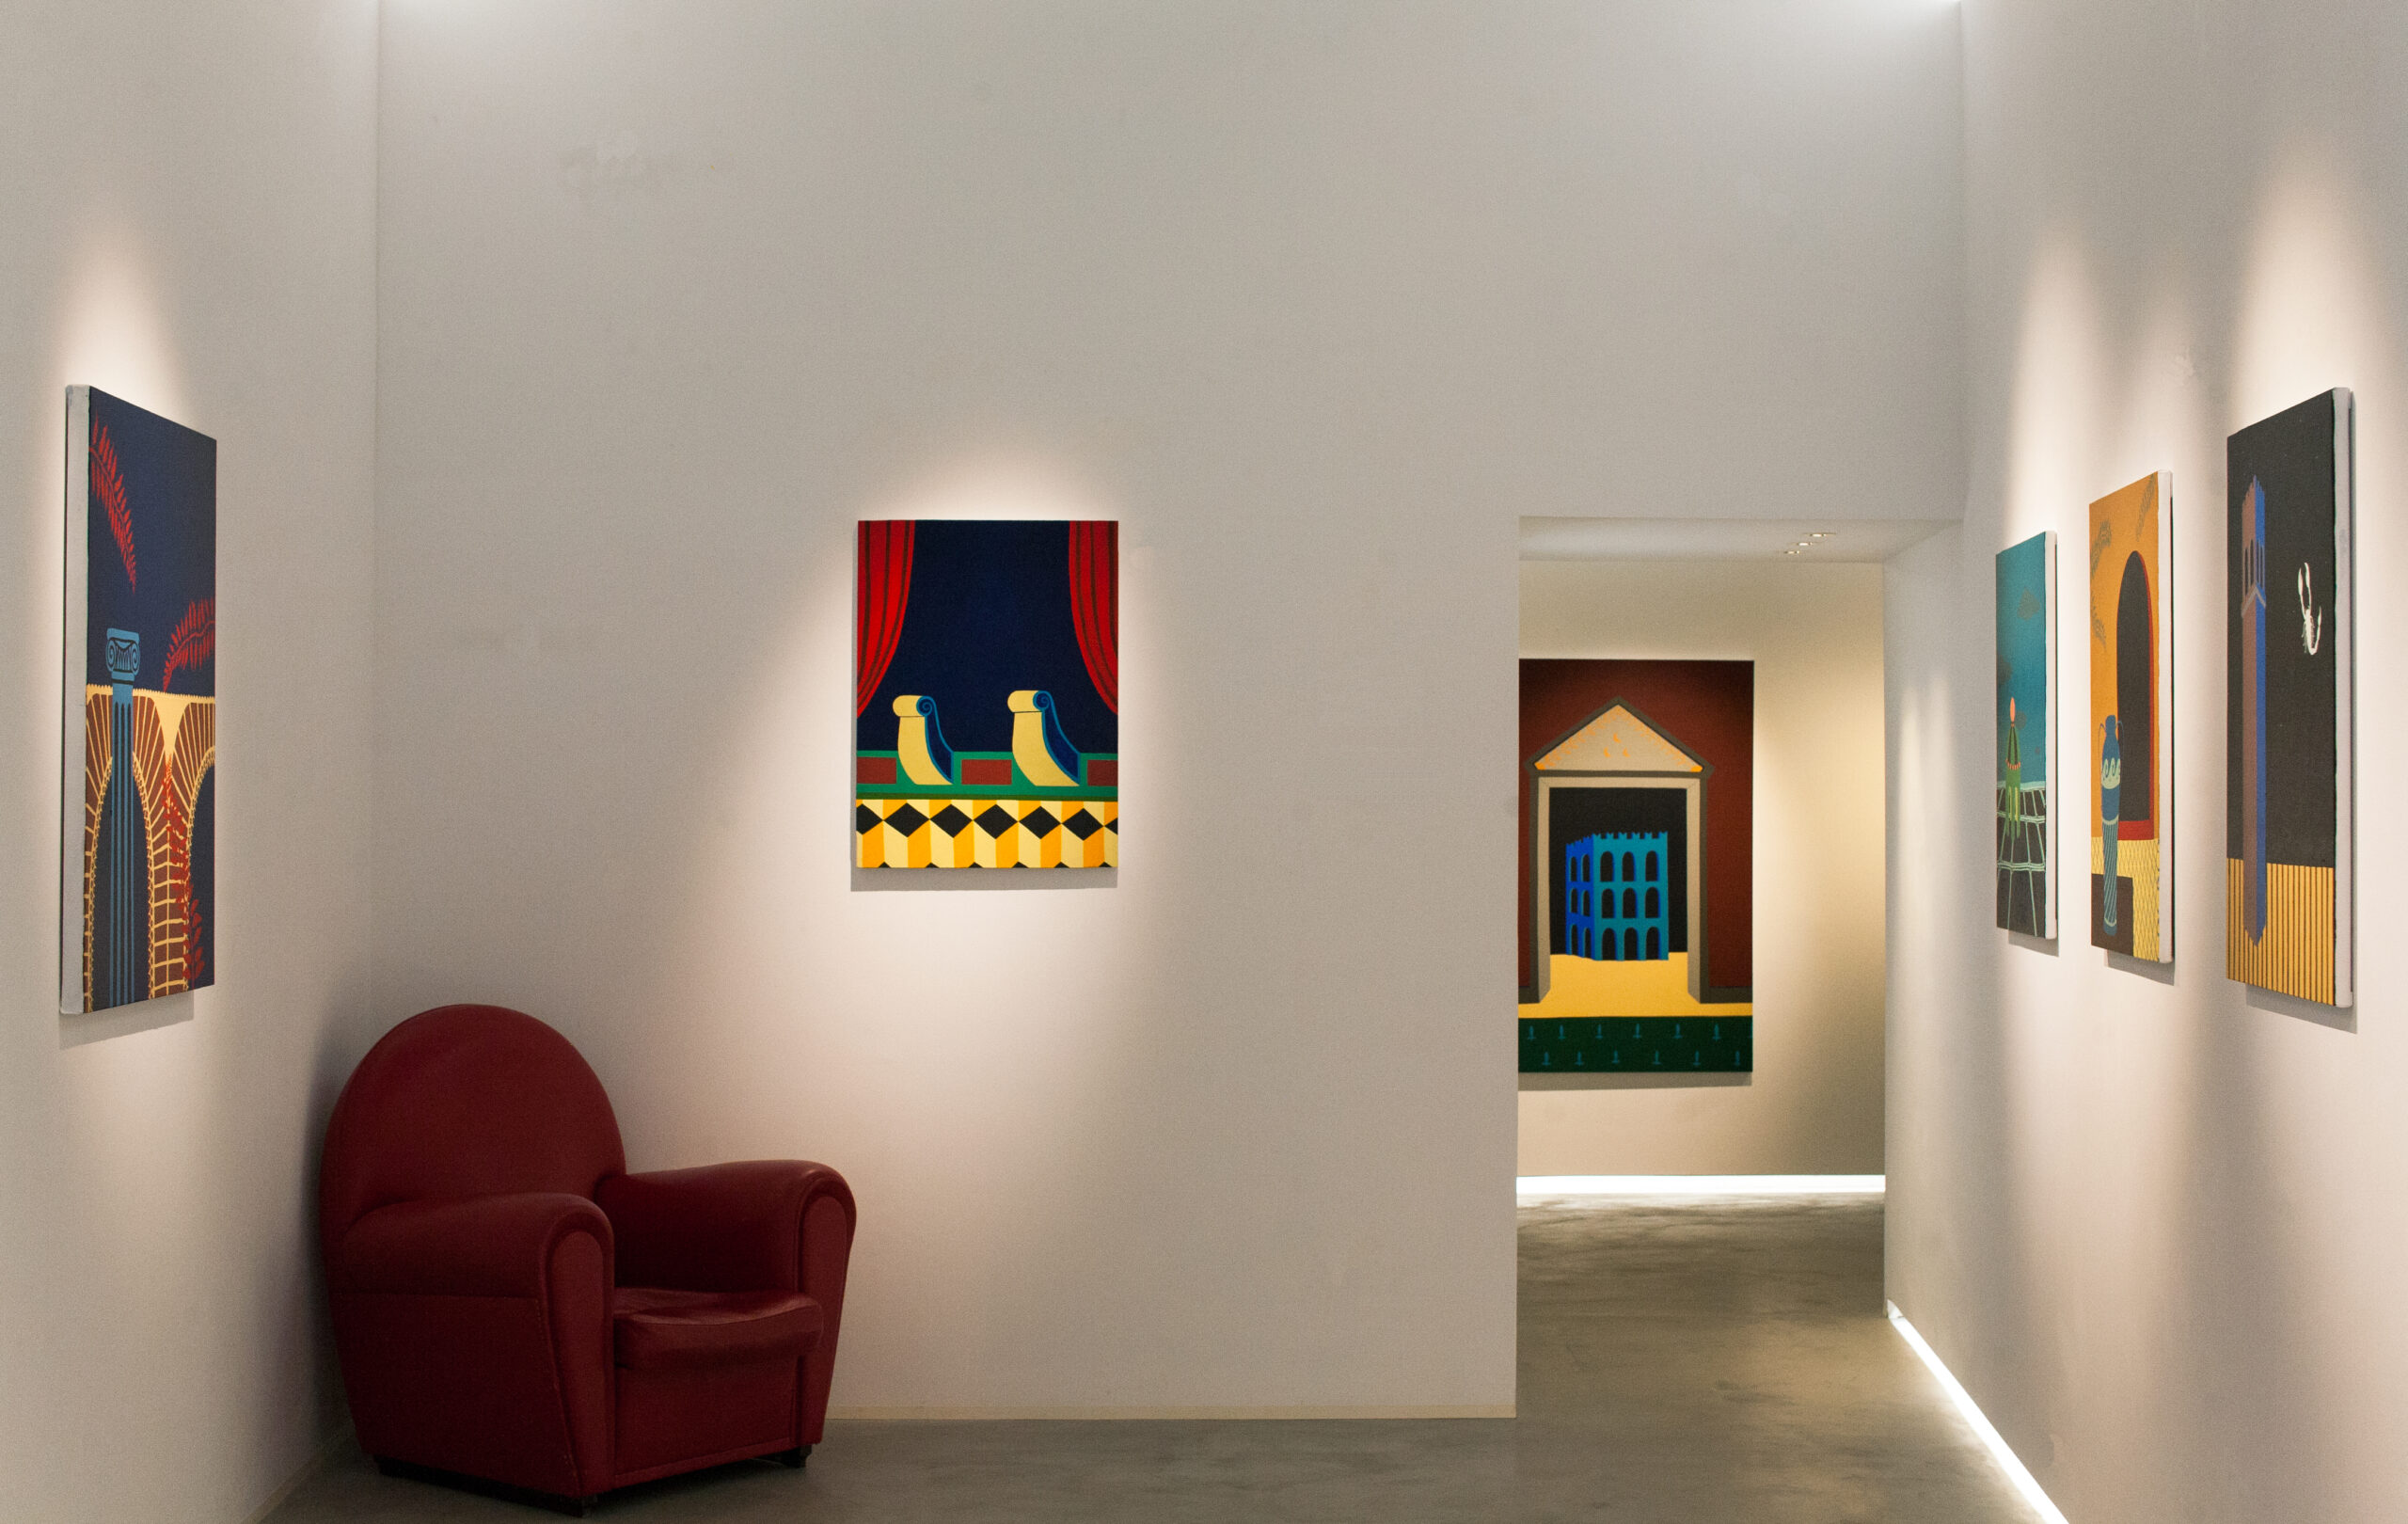 Veduta della mostra personale presso Galleria La Linea (Montalcino), In Fabula, 2020 - Luca Rubegni - courtesy of the artist